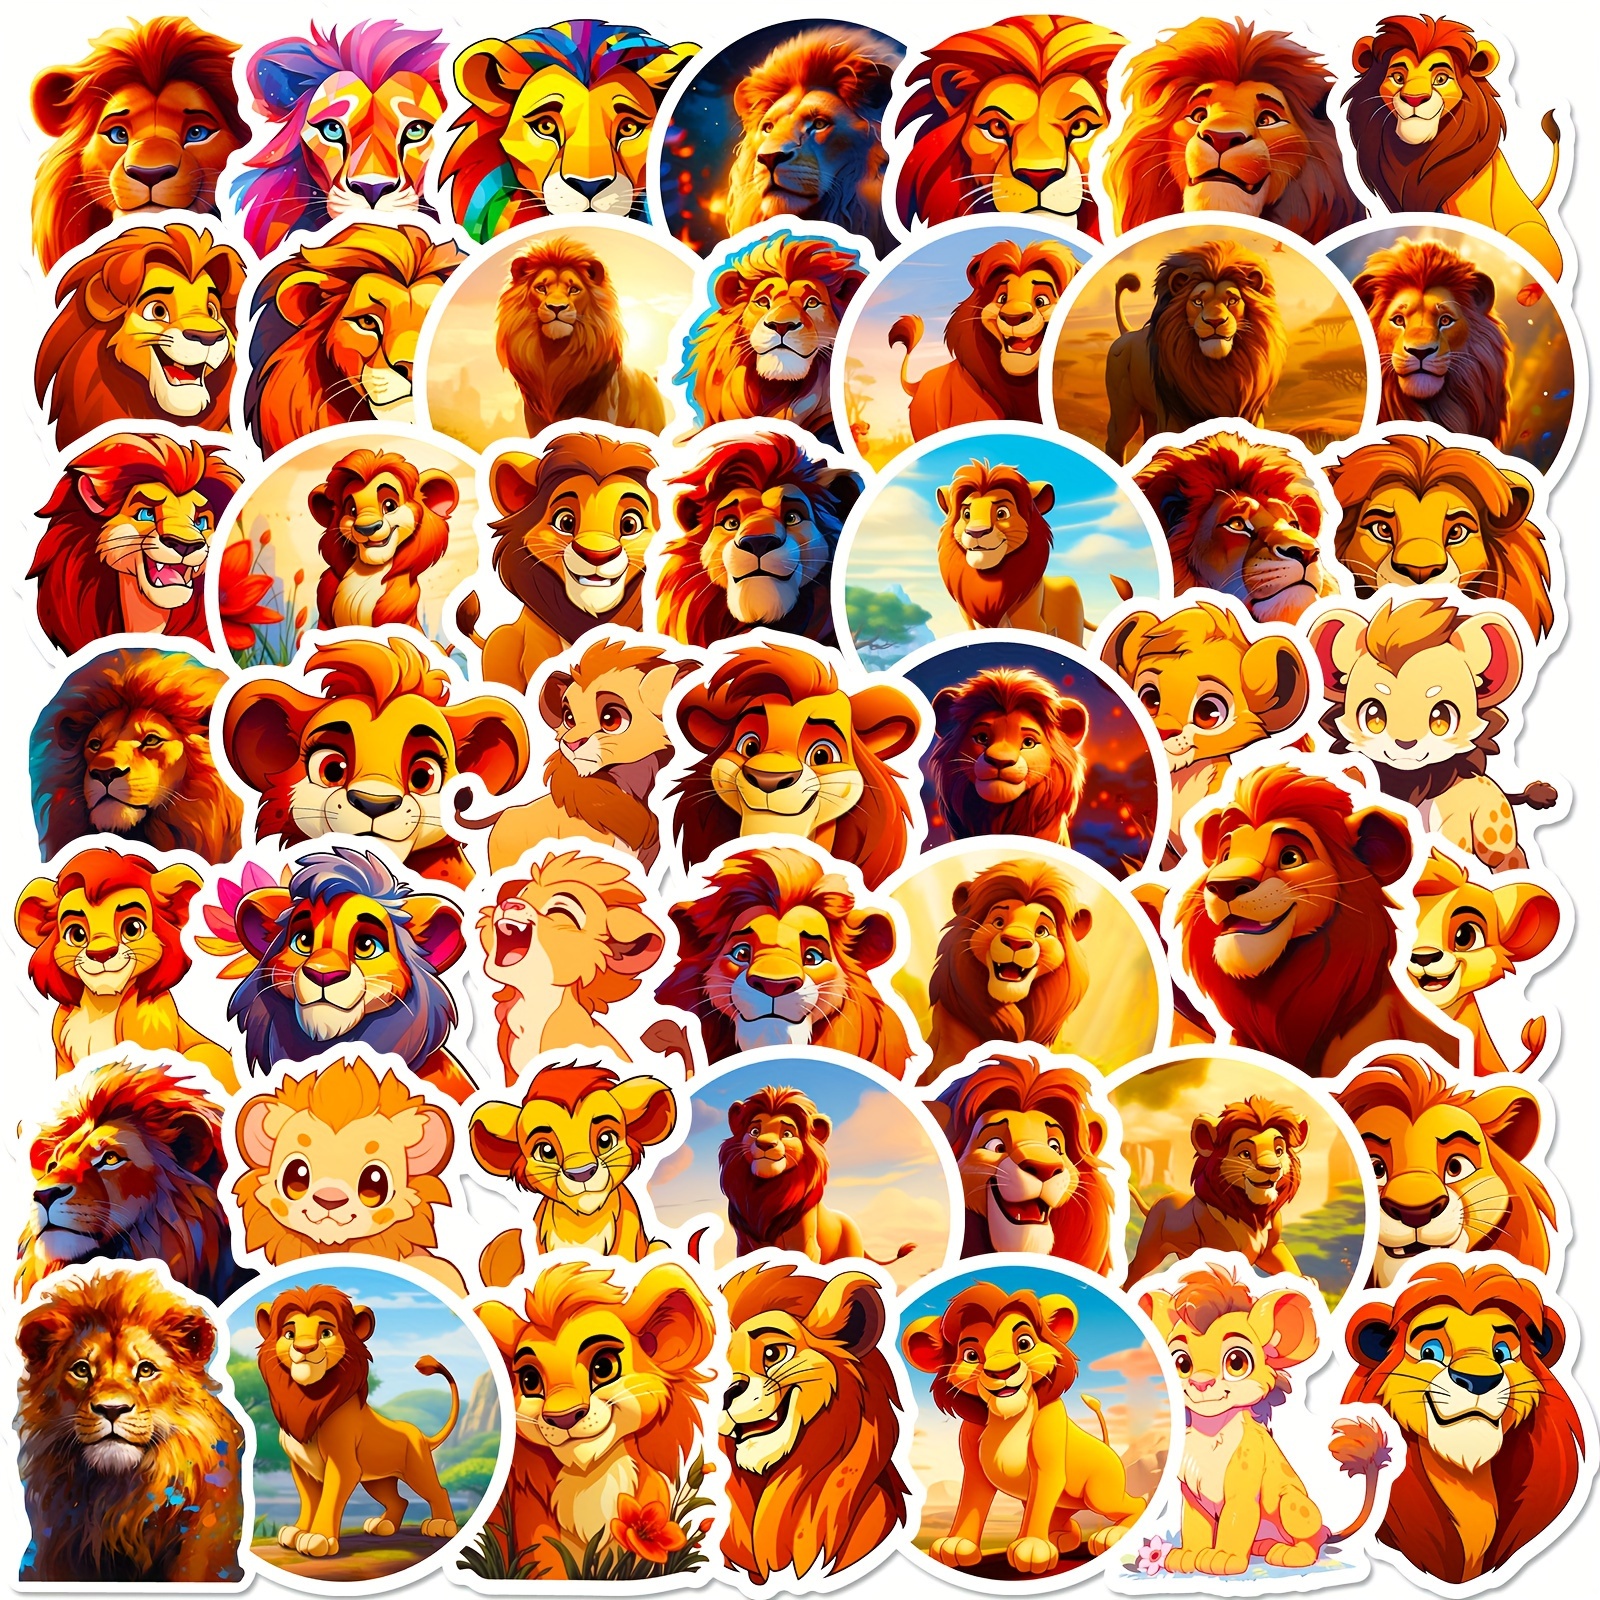 Vinyle décoratif et stickers 3d le roi lion